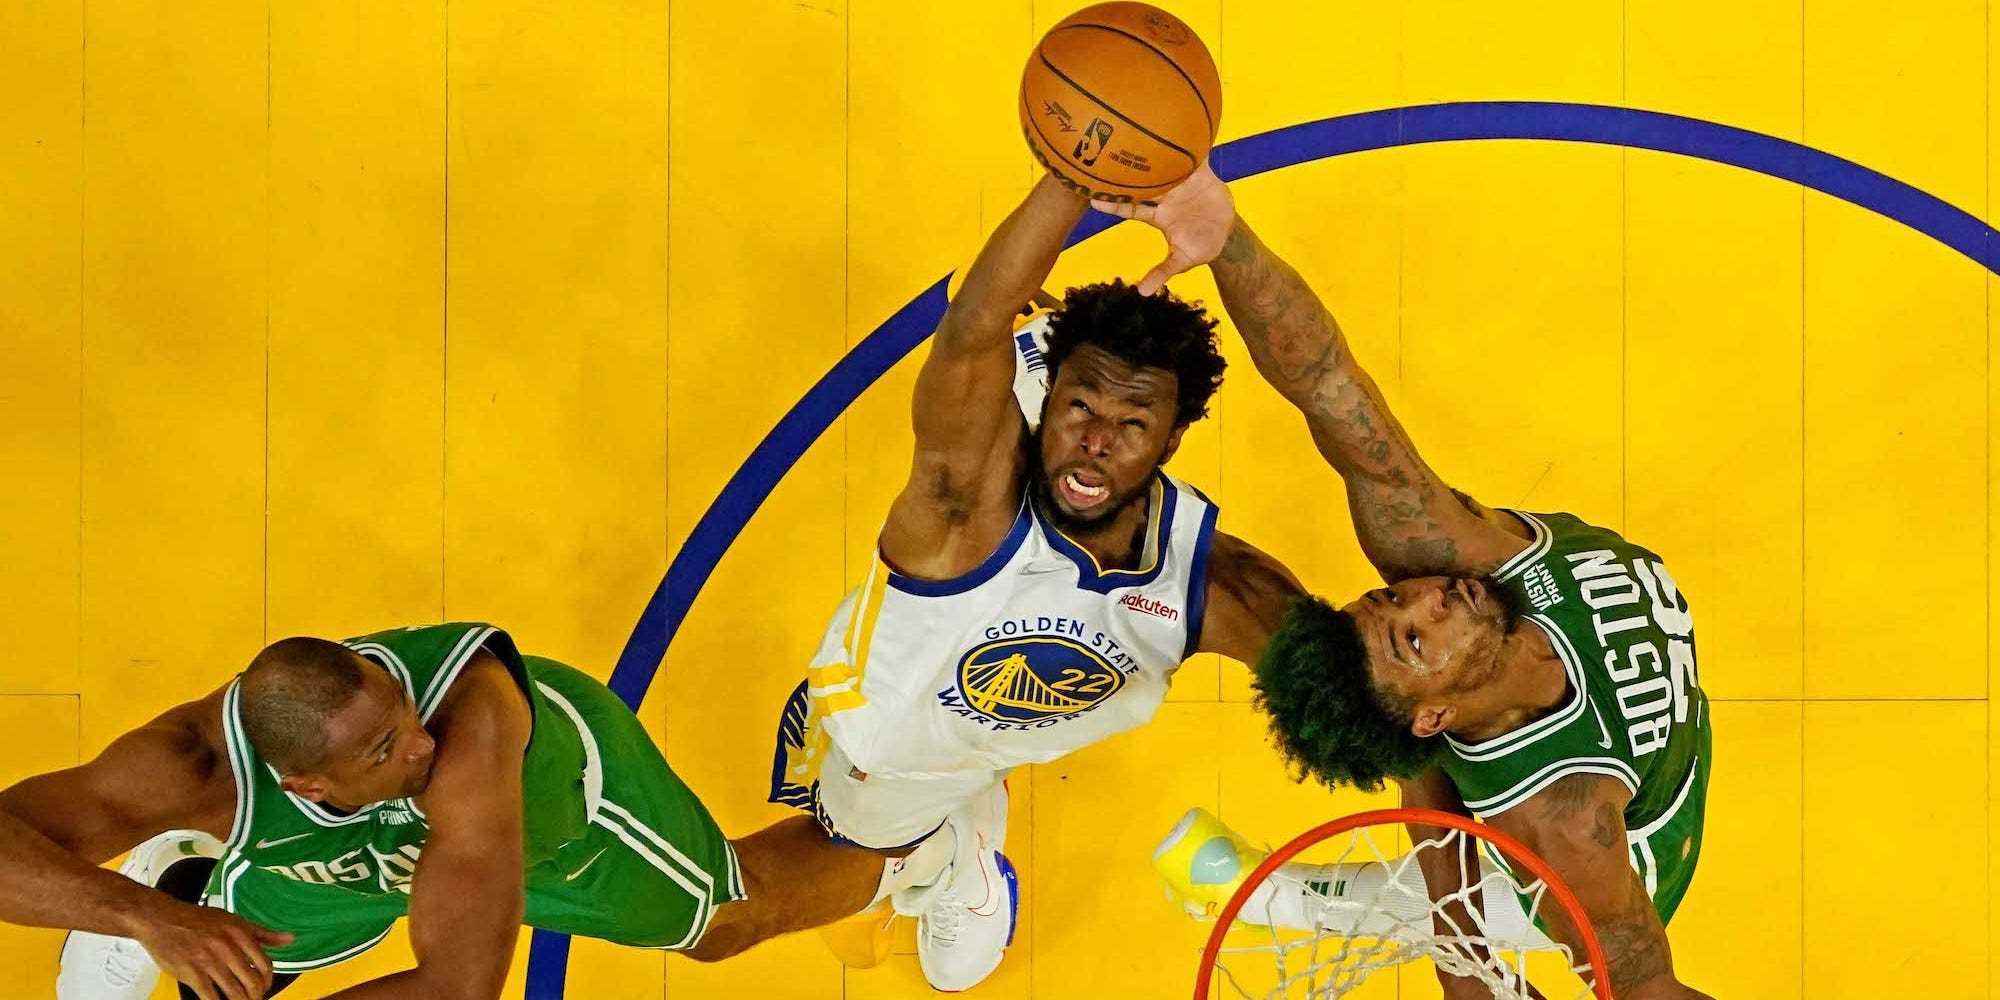 Eine Aufnahme von oben zeigt Andrew Wiggins, der in die Luft springt und einen Rebound erzielt, während er von Celtics-Spielern umgeben ist.